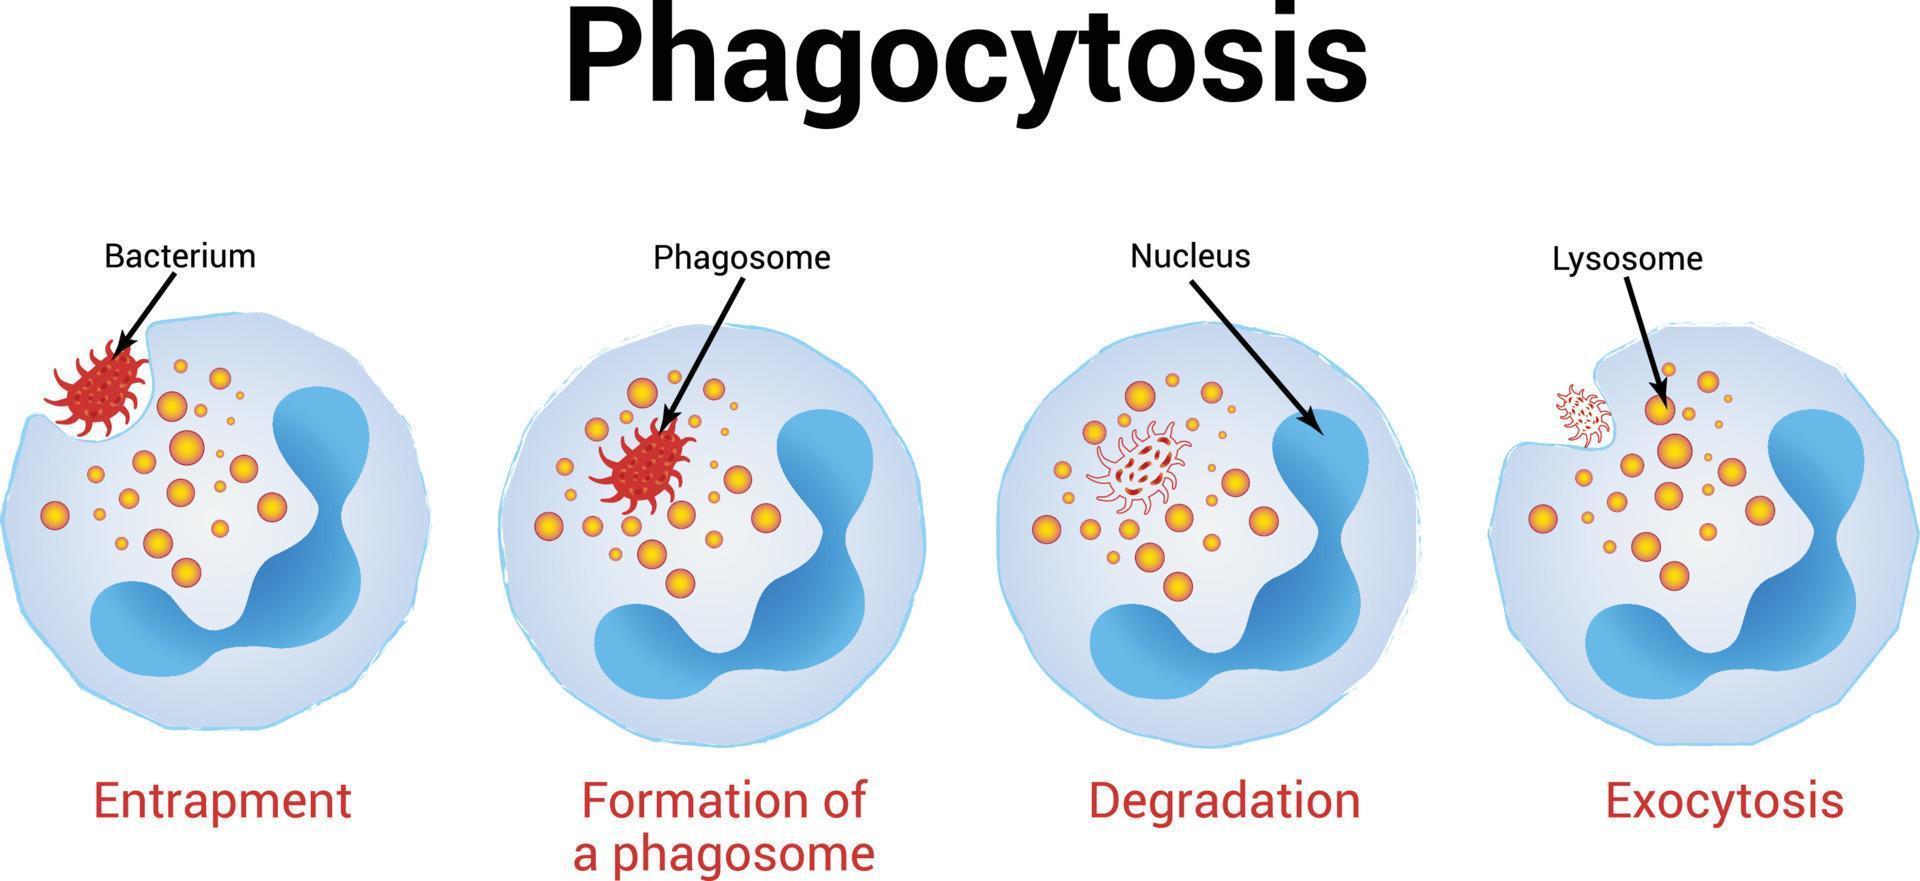 fagocytos vektor illustration, medicinsk illustration